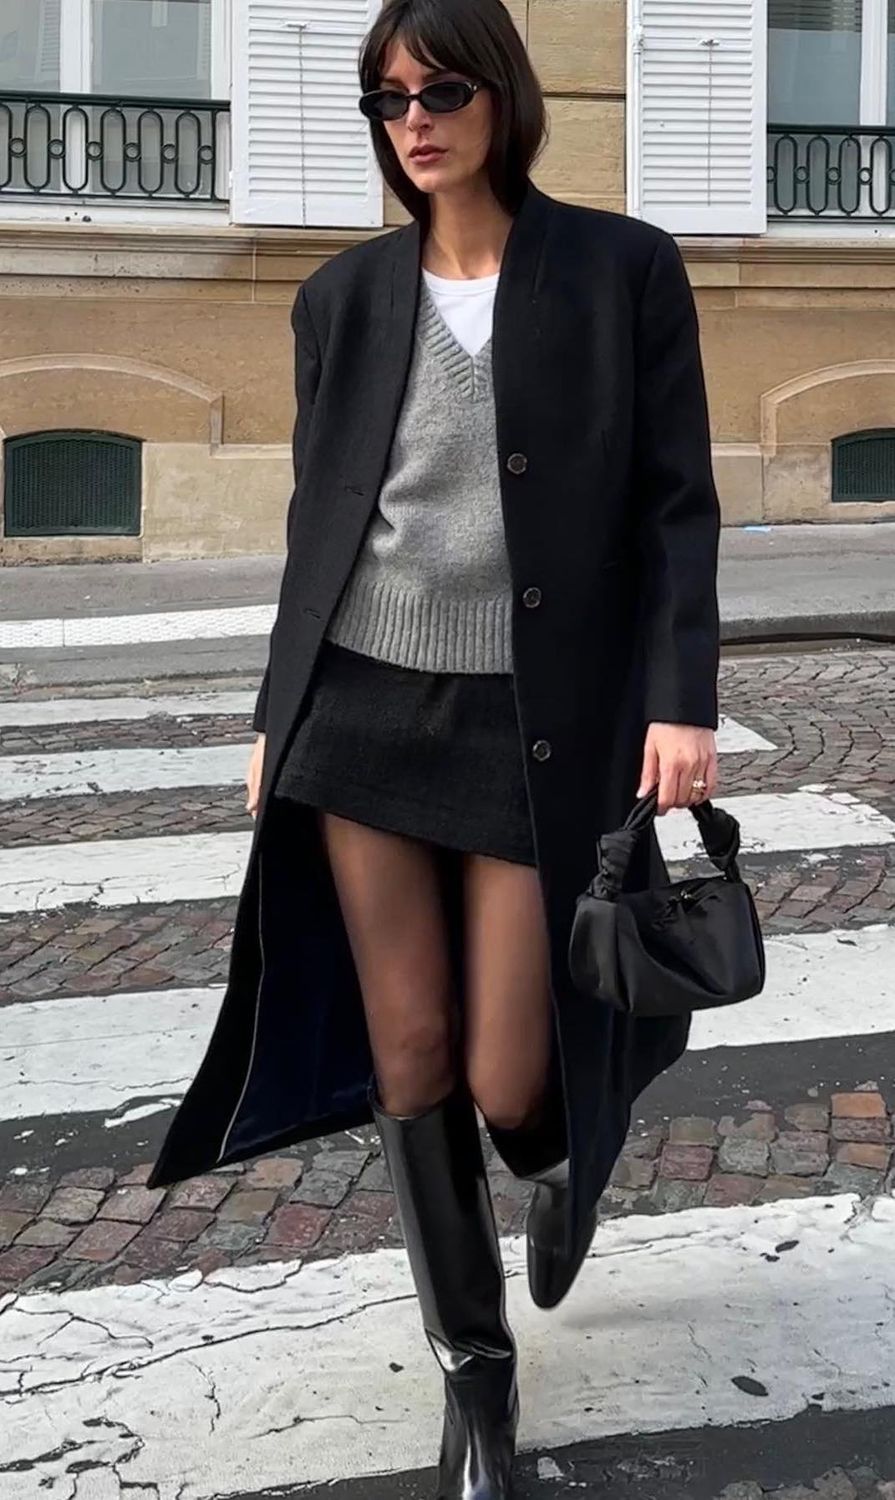 Parisian winter outfits leiasfez